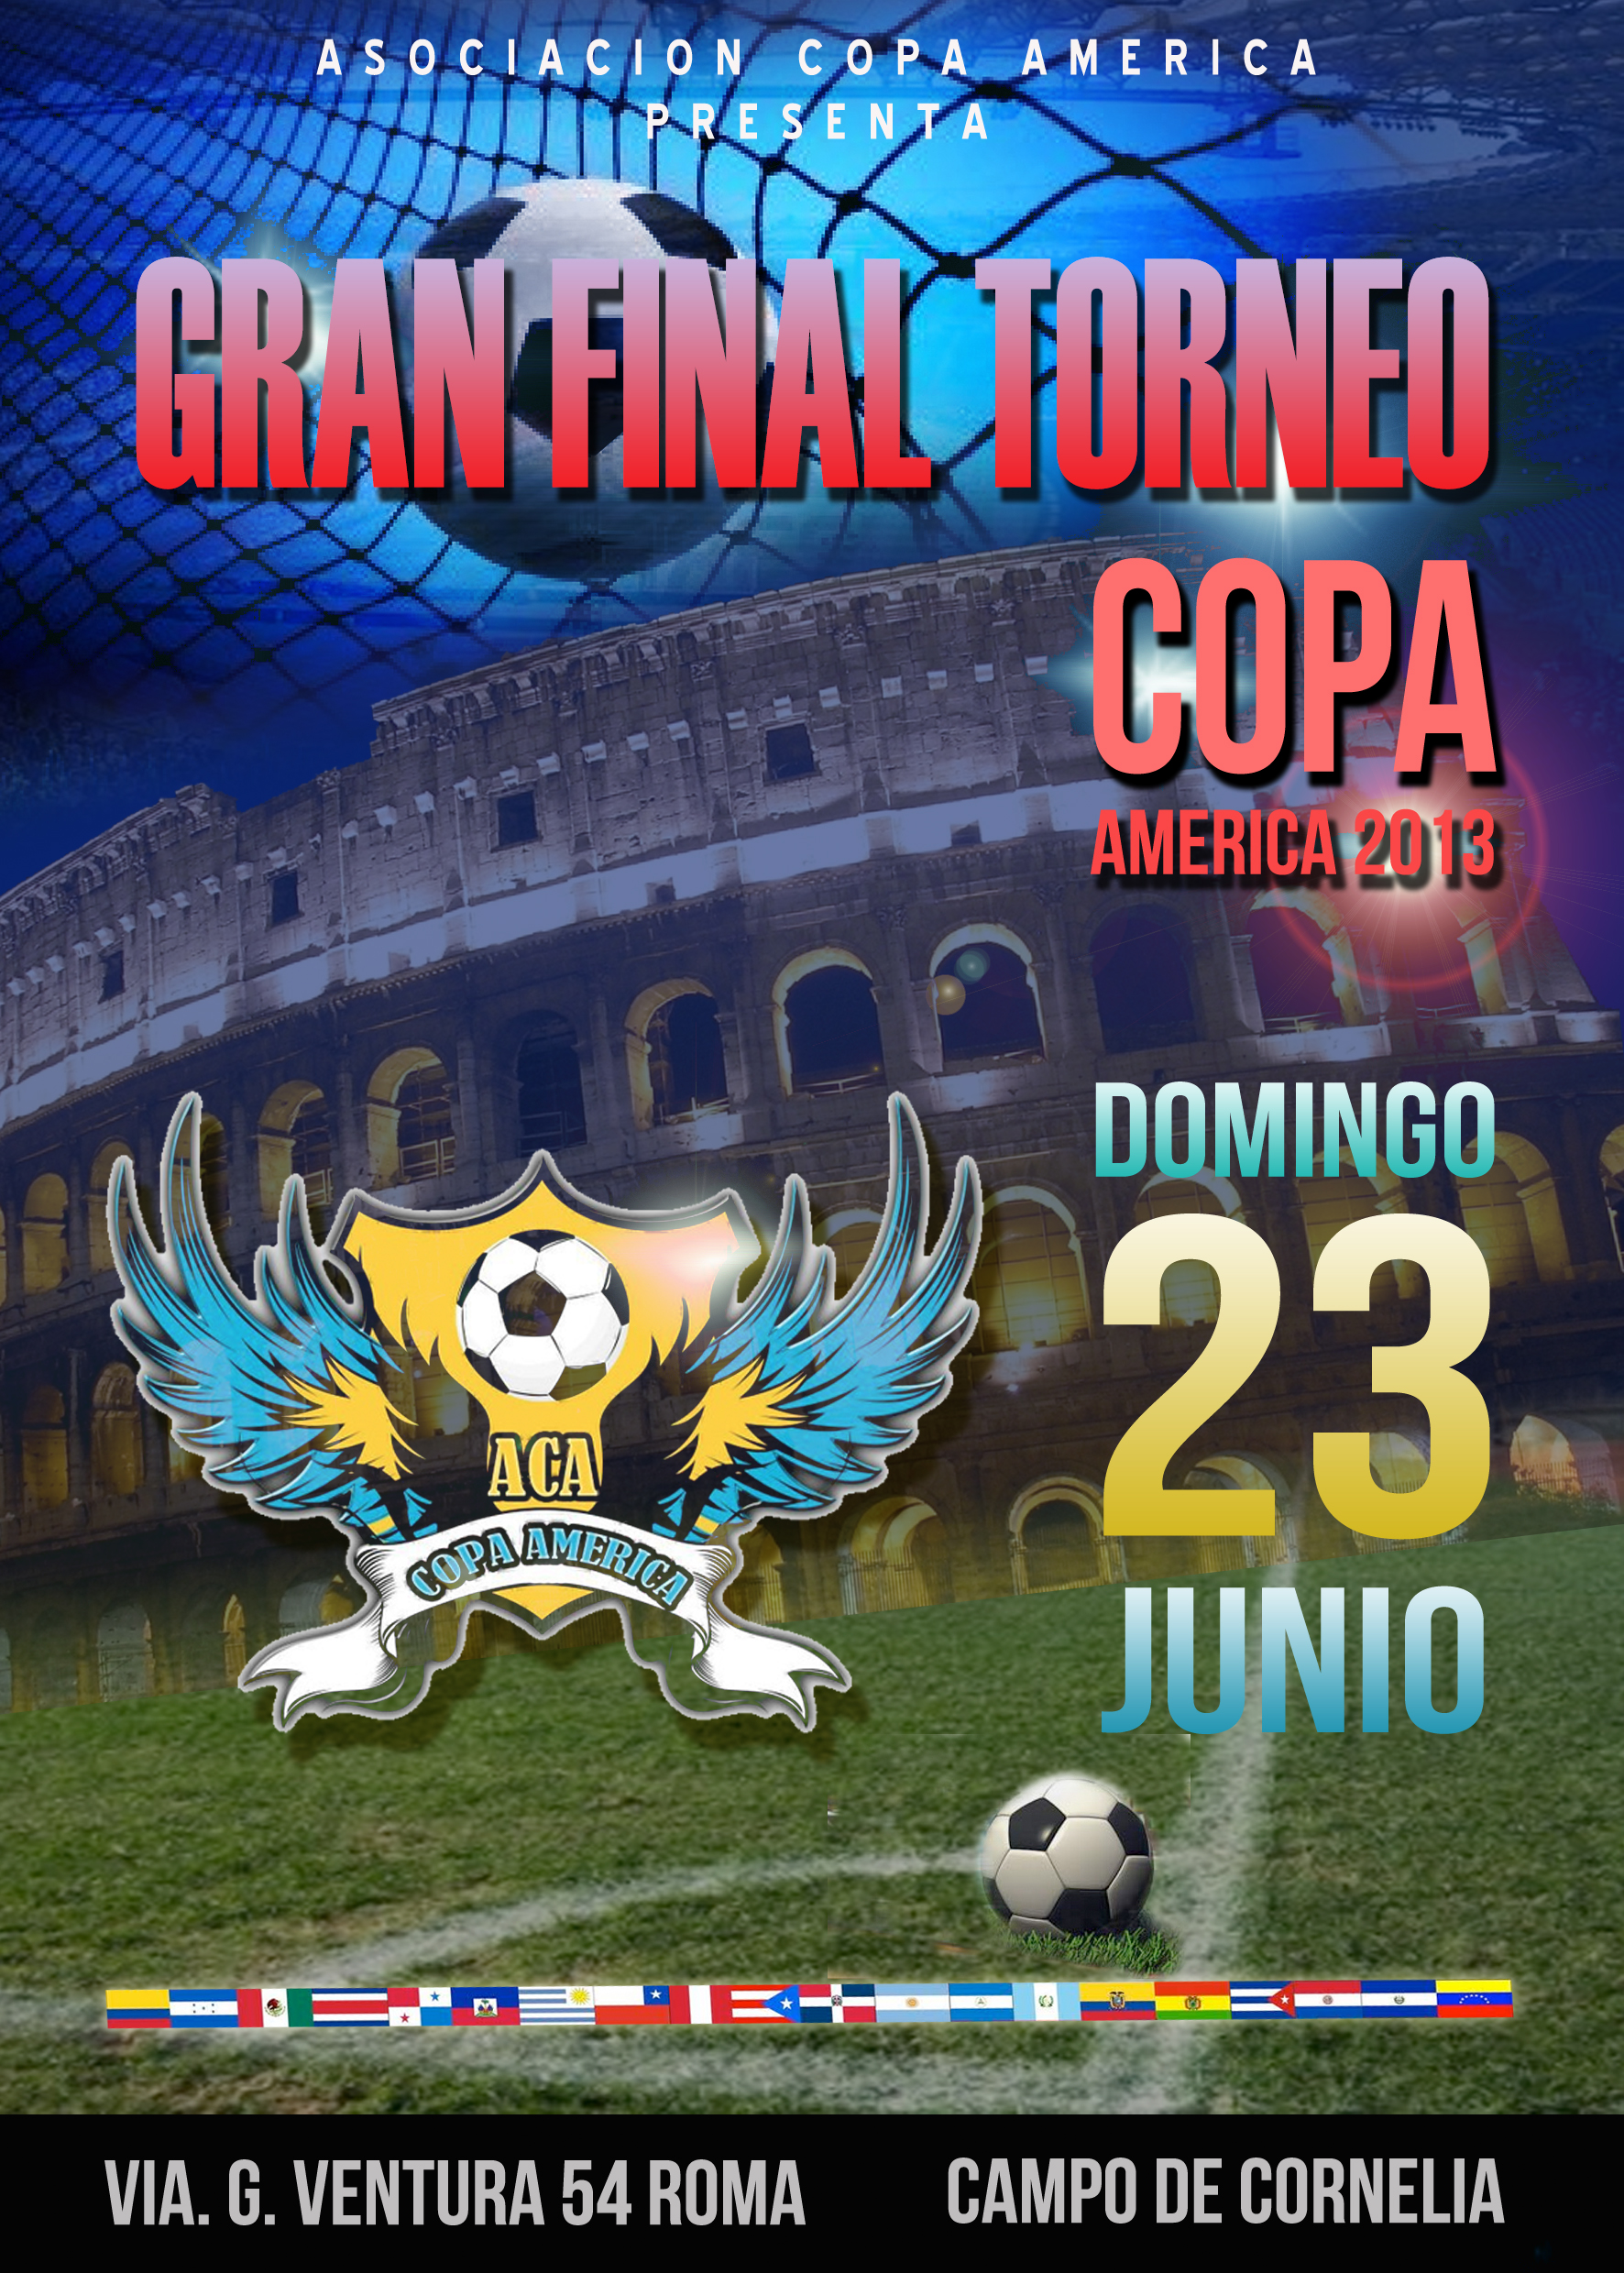 Final de Copa América en Roma 23 de Junio